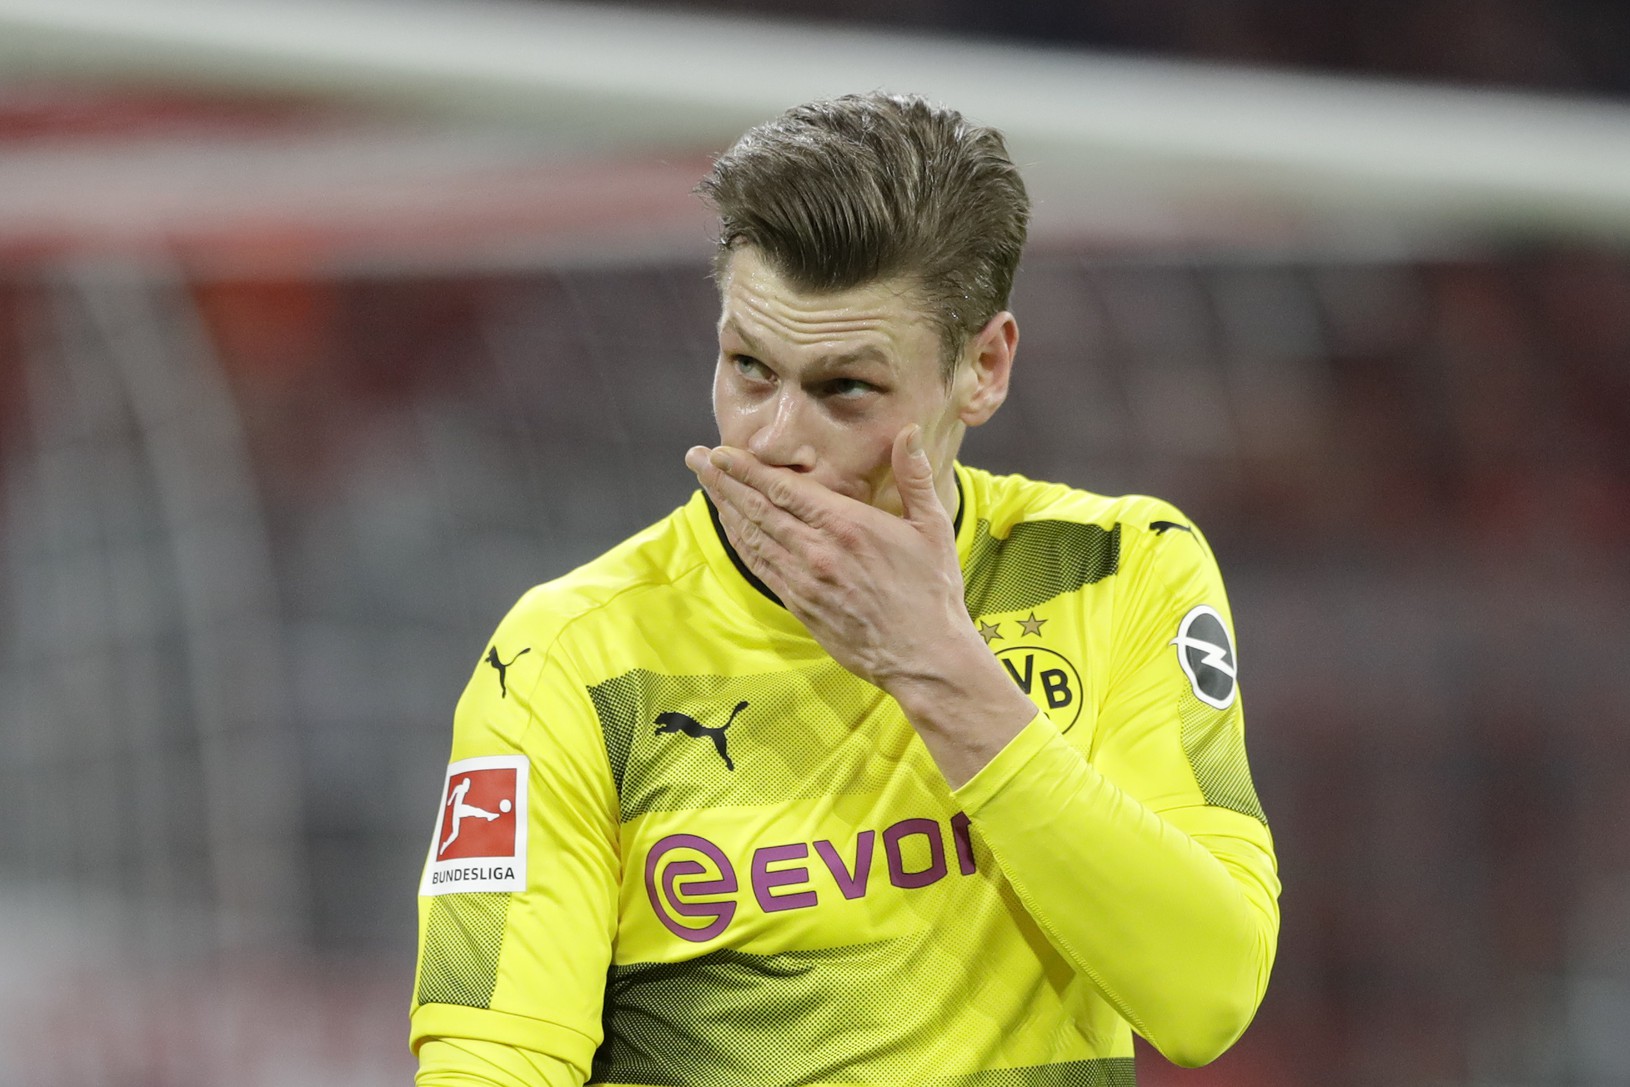 Borussia utrpela zdrvujúcu prehru